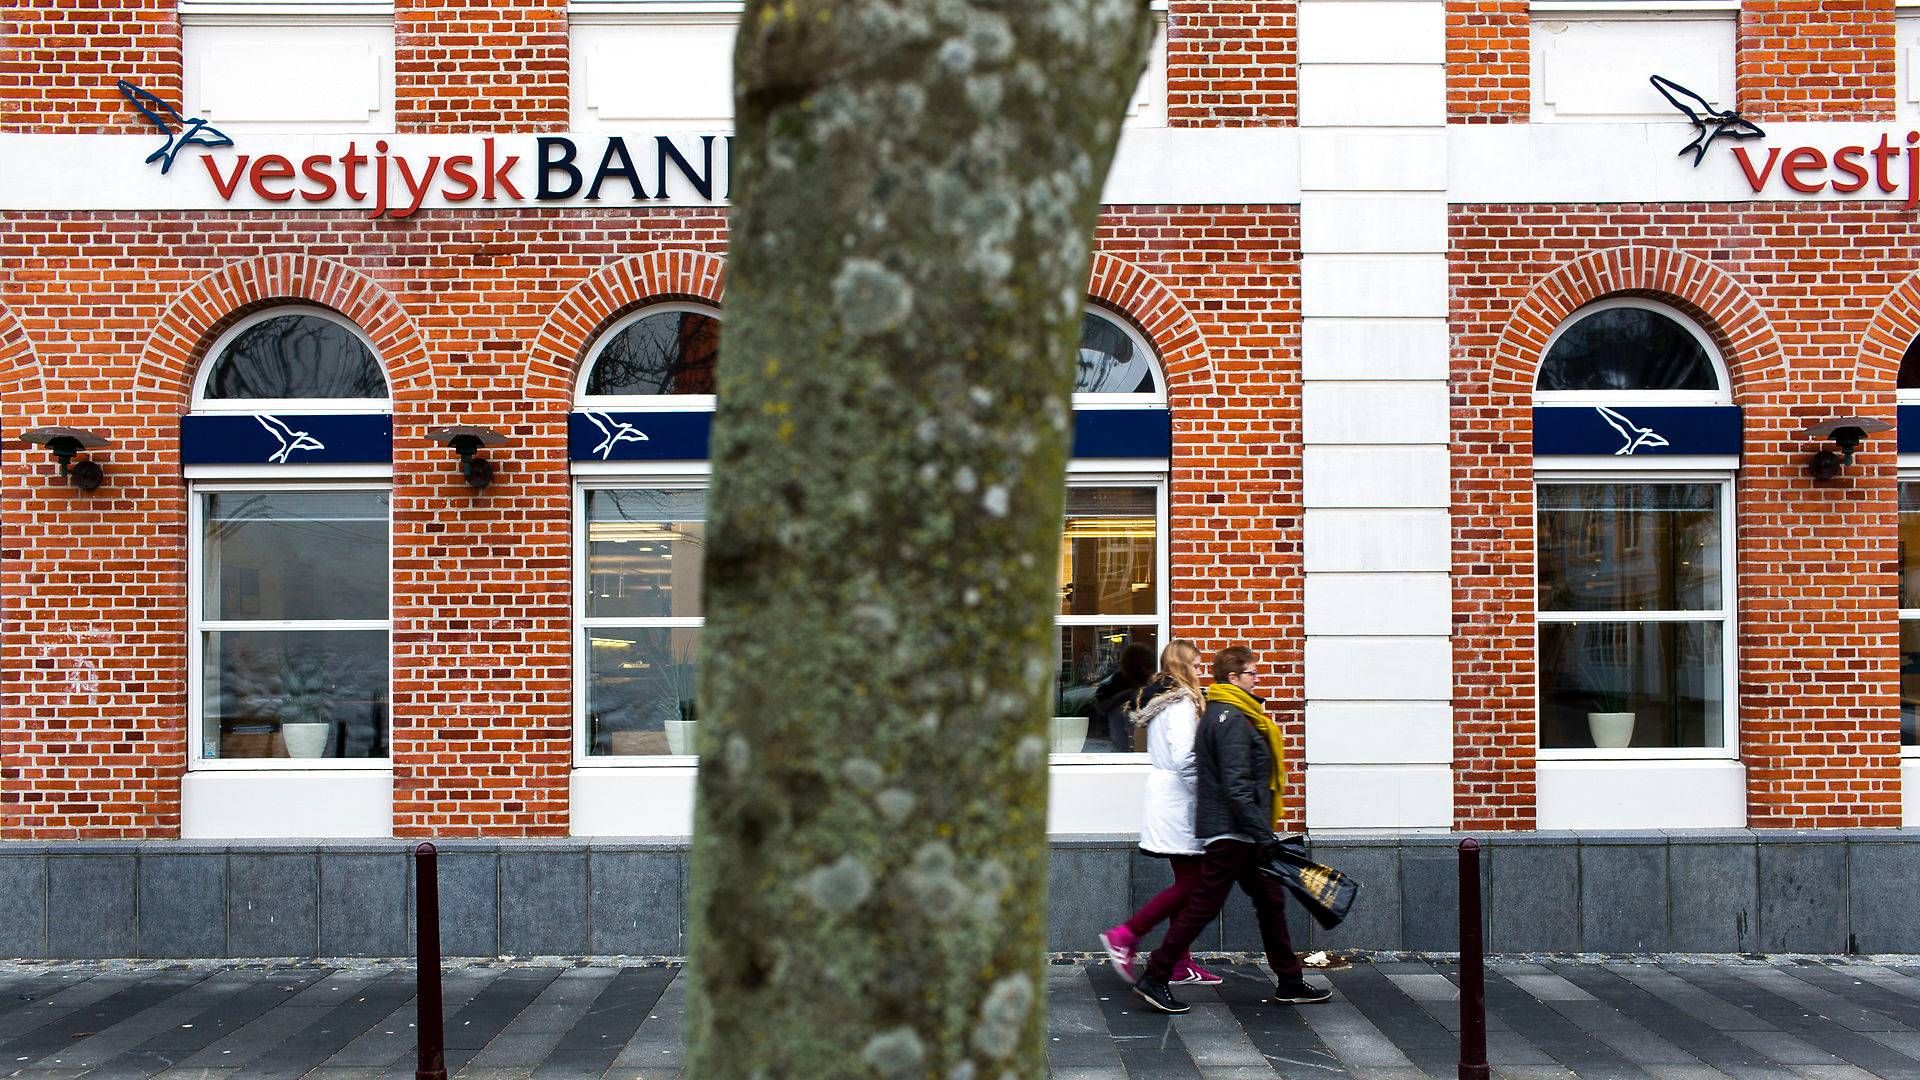 De ansatte i den fusionerede Vestjysk Bank har godt været forberedt på, at der ville komme en større nedskæringsrunde. | Foto: Per Folkver/Politiken/Ritzau Scanpix